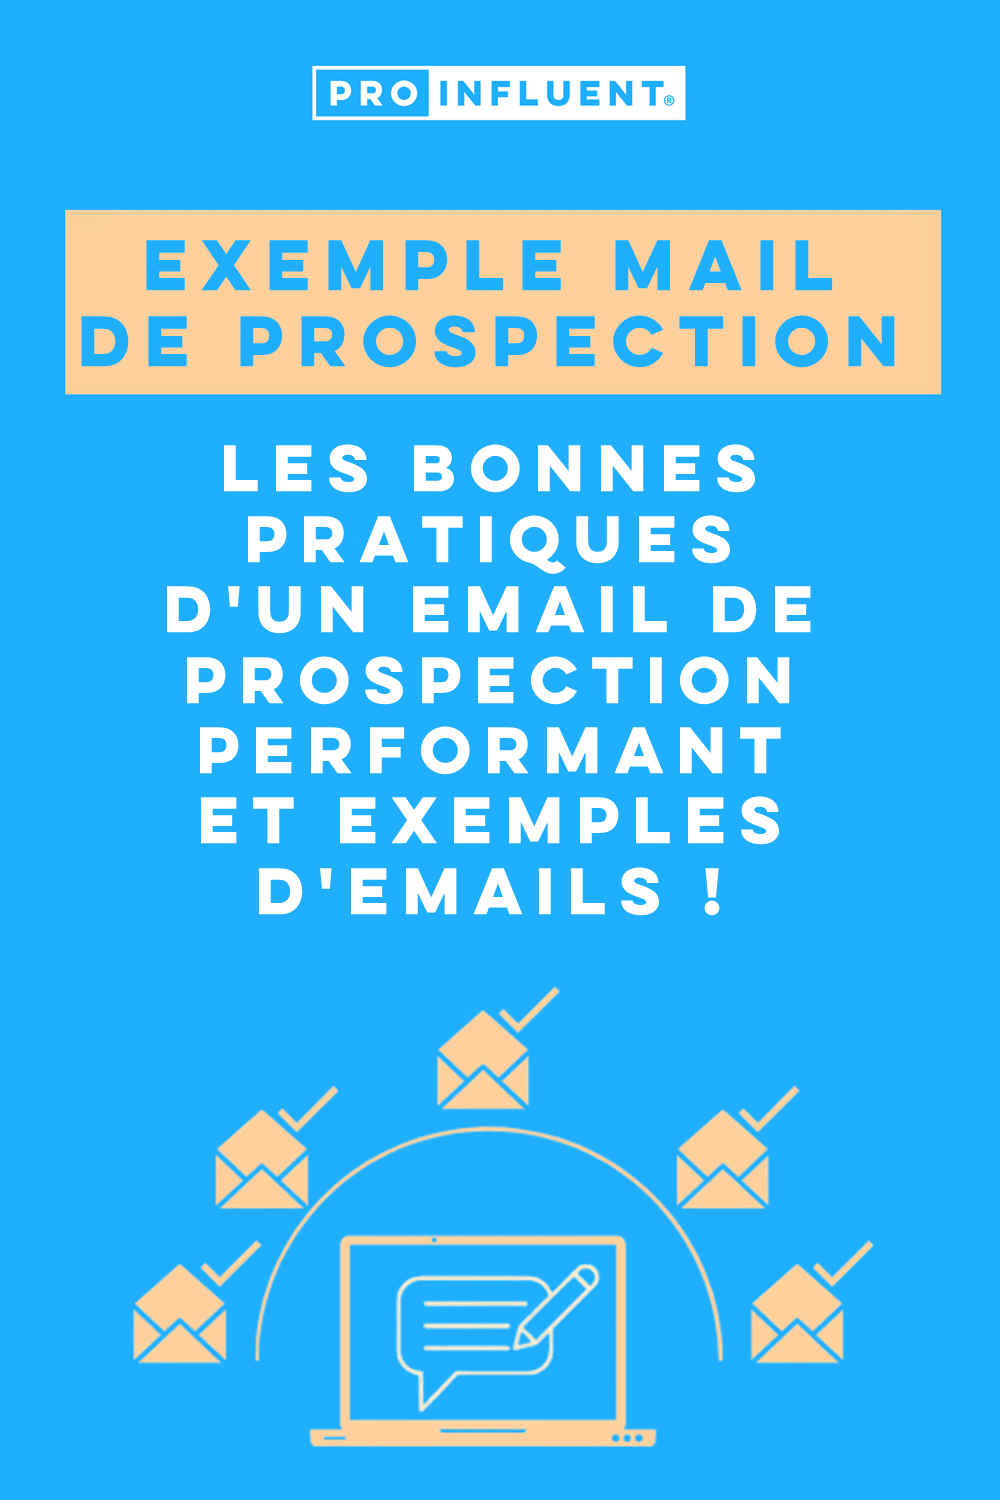 Exemple mail de prospection : les bonnes pratiques d'un email de prospection performant et exemples d'emails !